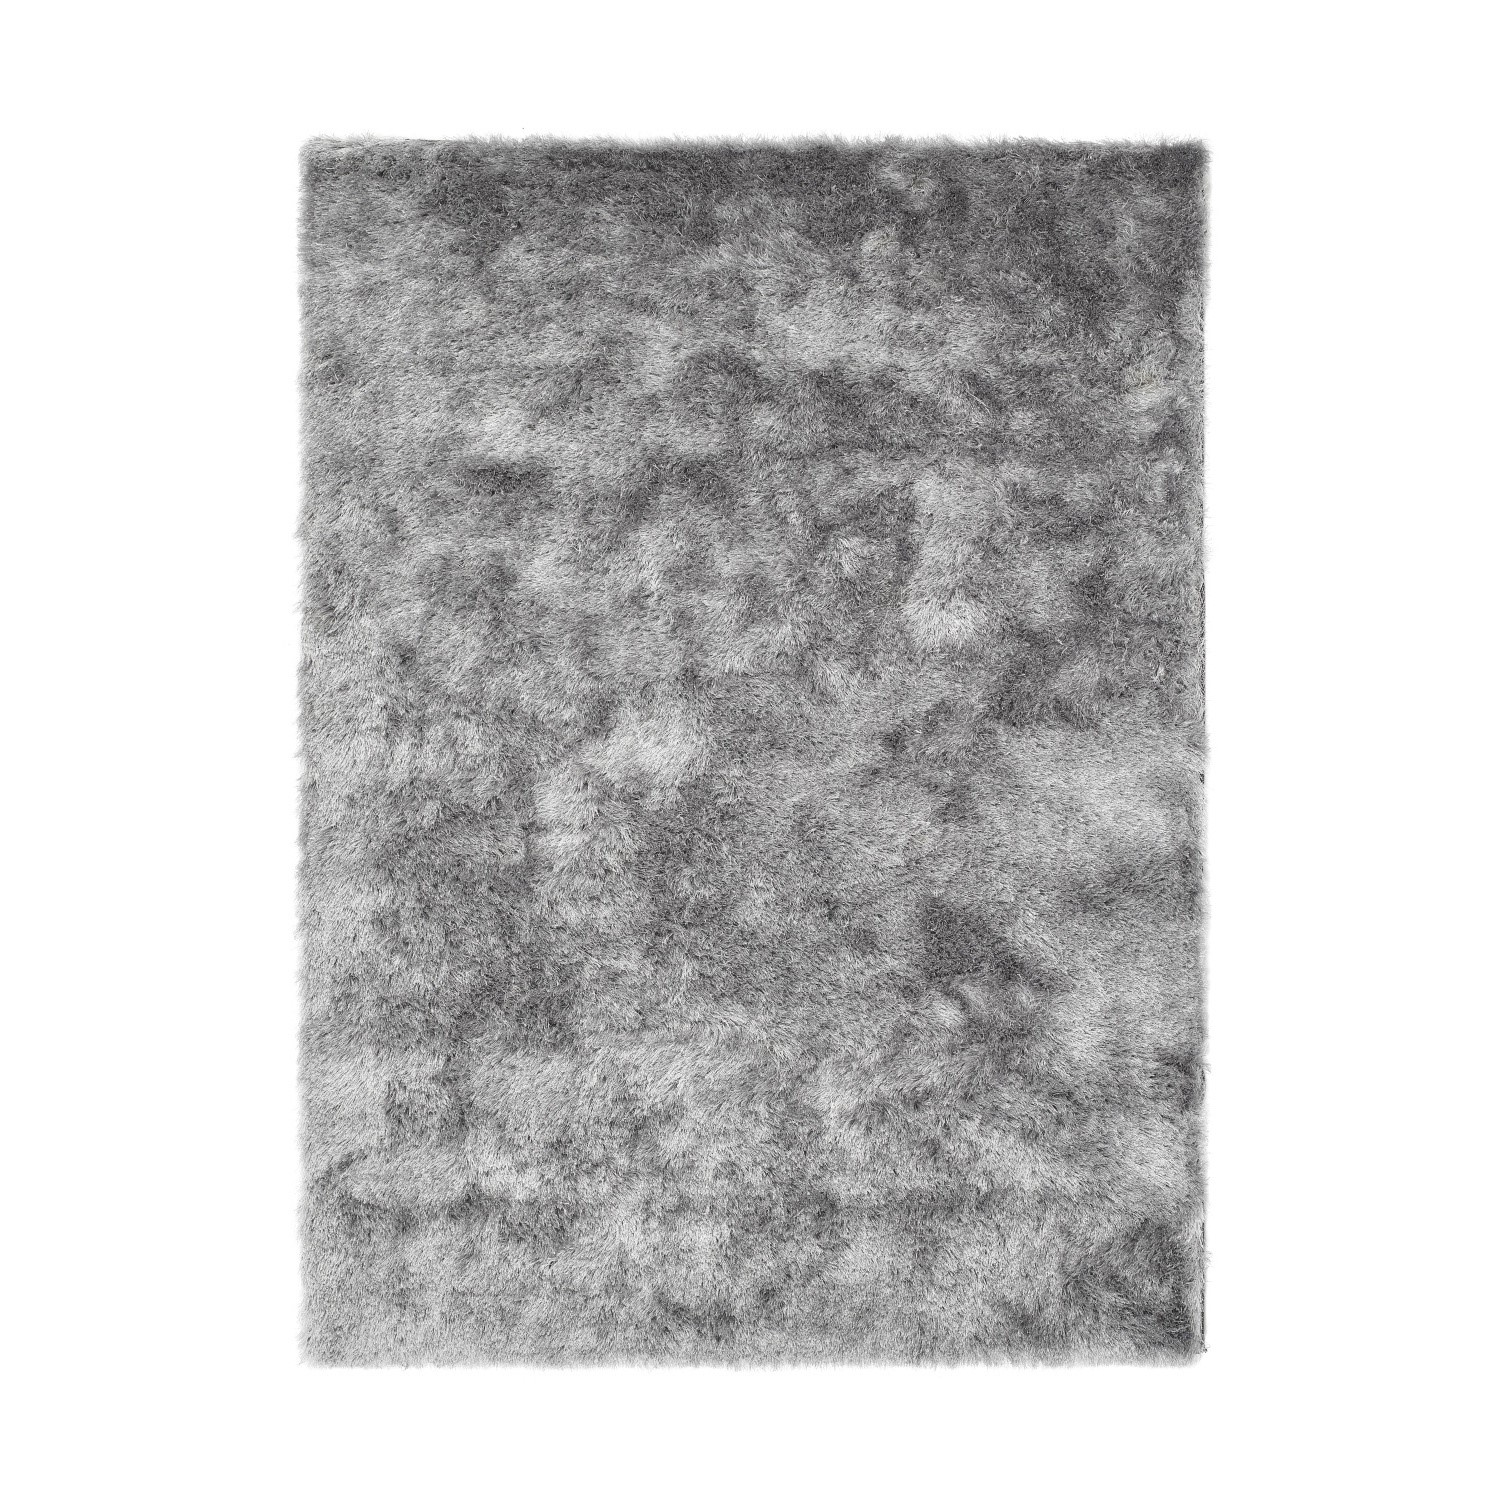 Photo of Silver shaggy rug - 170x120cm - ripley